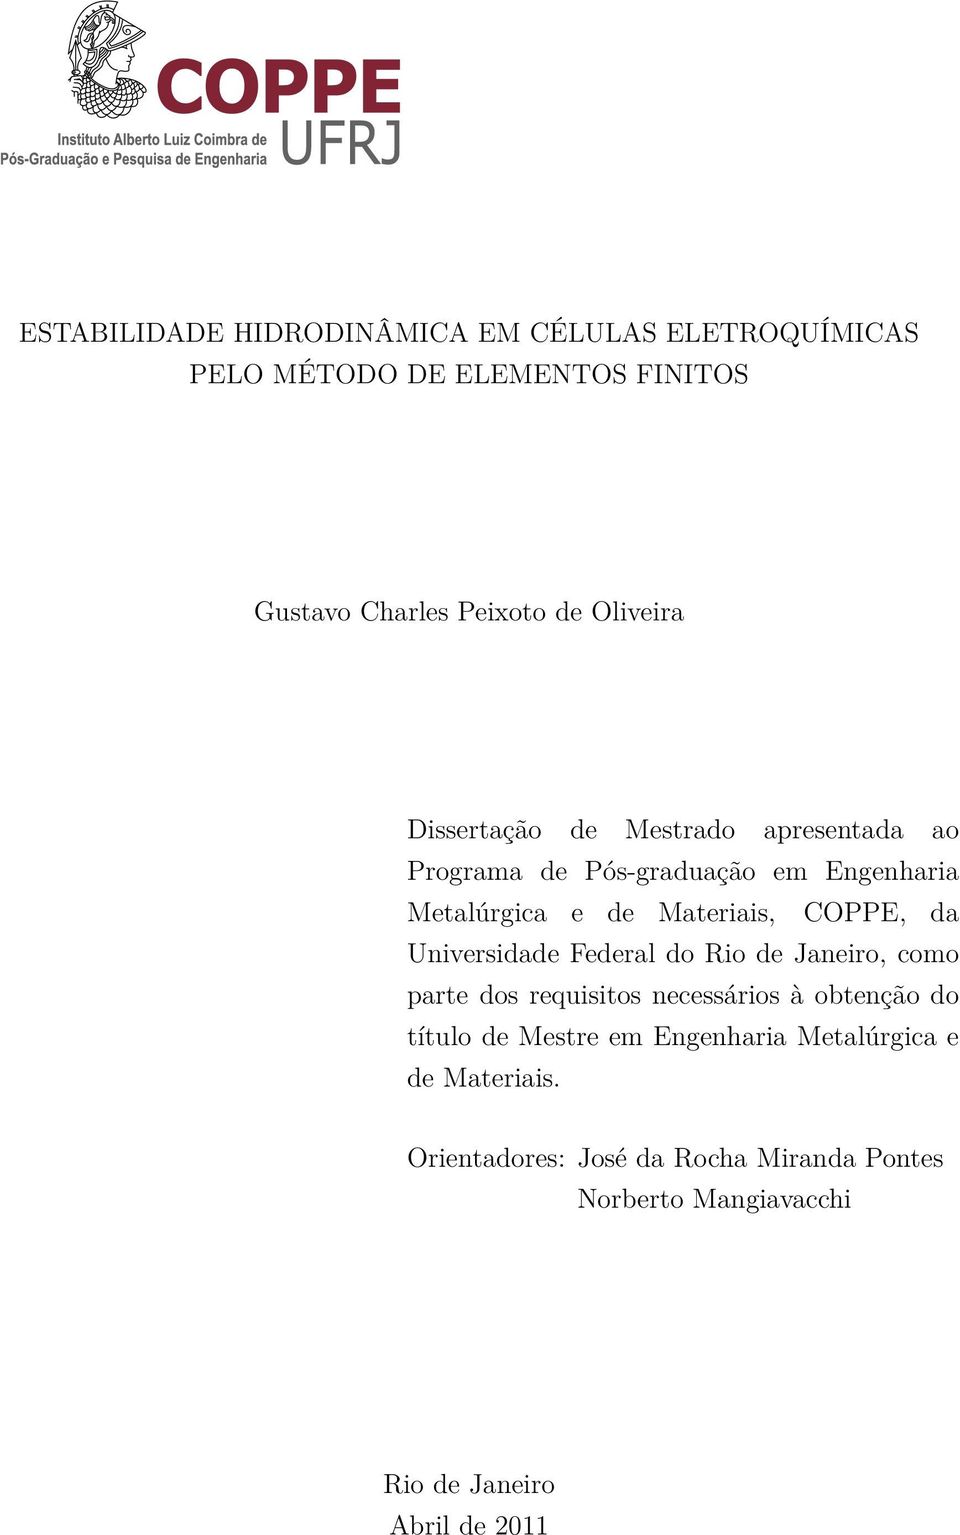 COPPE, da Universidade Federal do Rio de Janeiro, como parte dos requisitos necessários à obtenção do título de Mestre